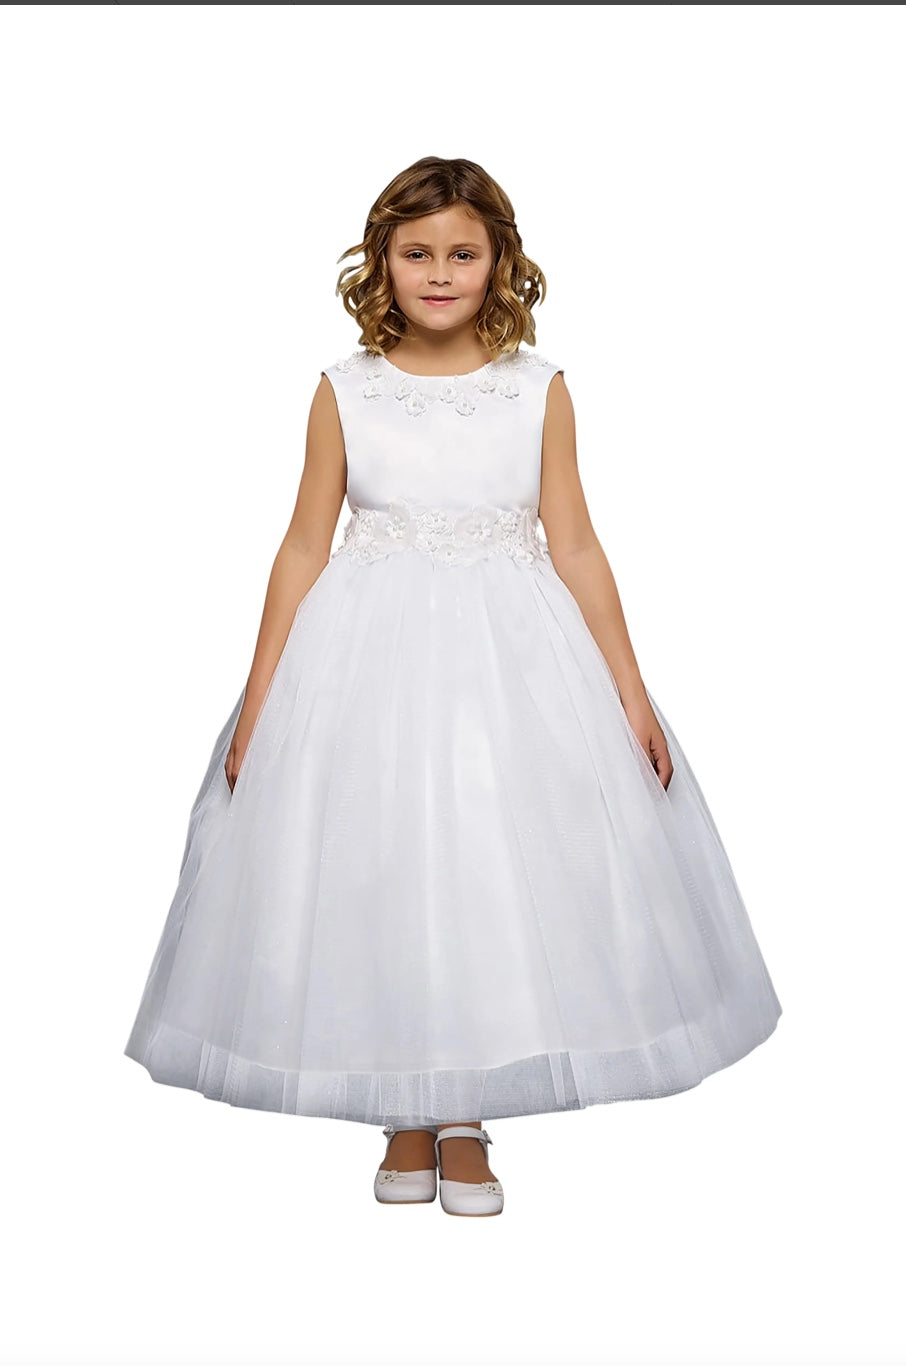 Luxurious Princess Ballgown Dress